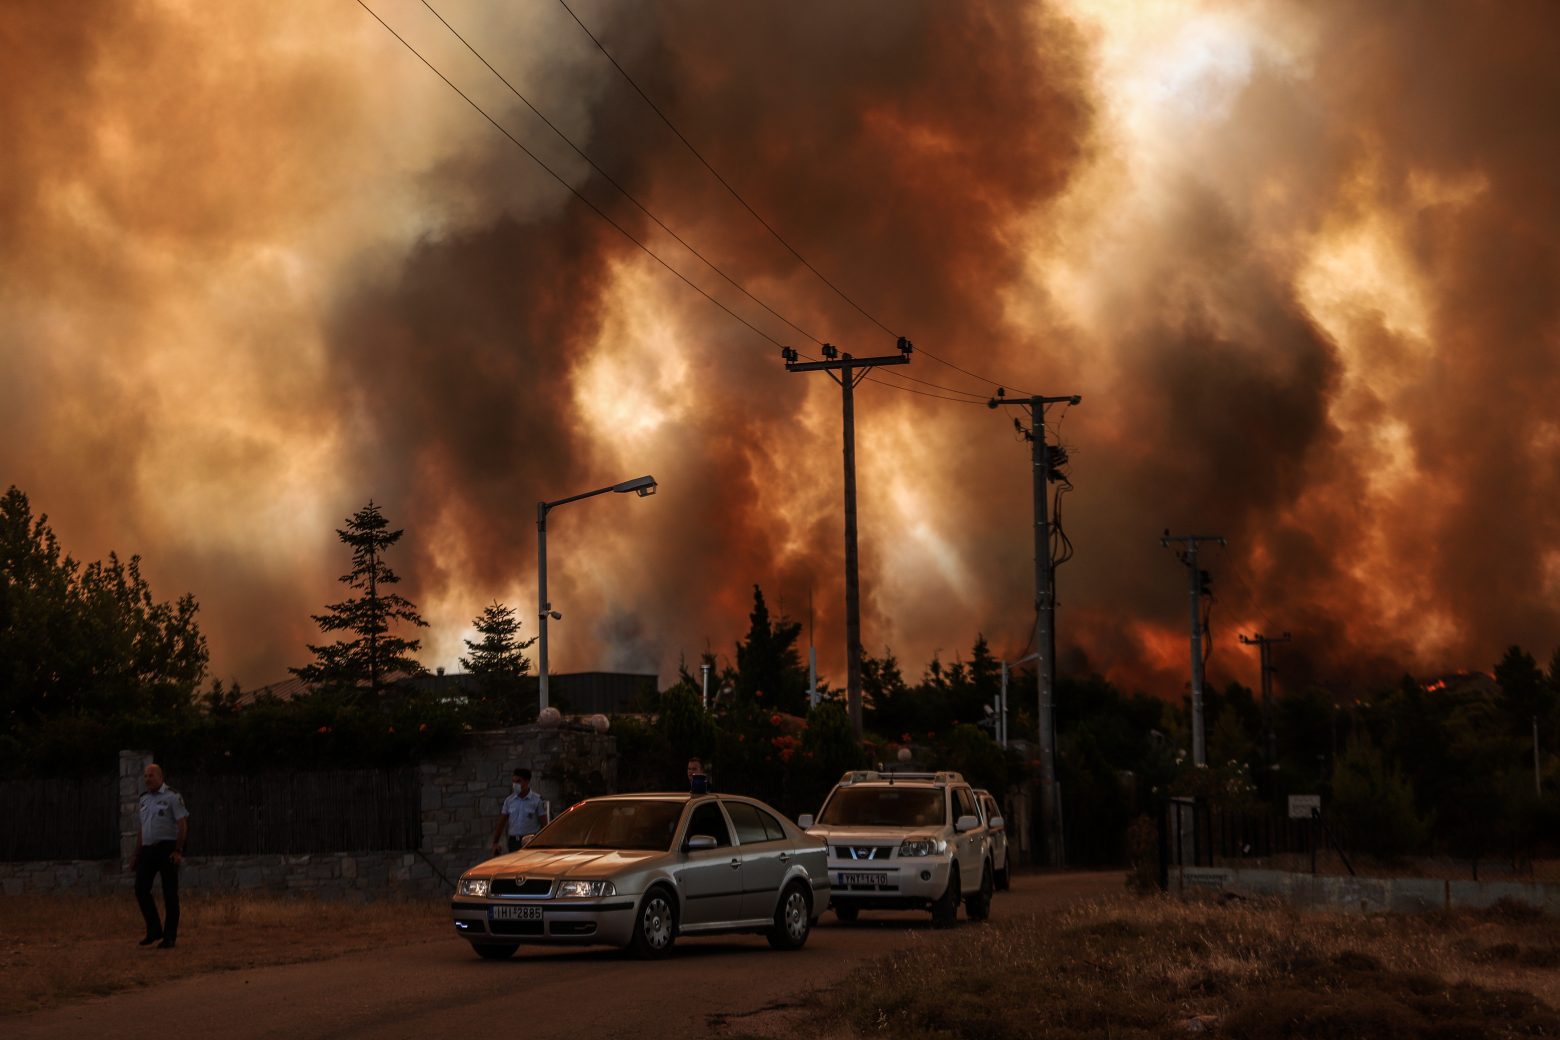 Φωτιά στη Δροσοπηγή - Τρεις τραυματίες - Μεταφέρονται σε νοσοκομείο